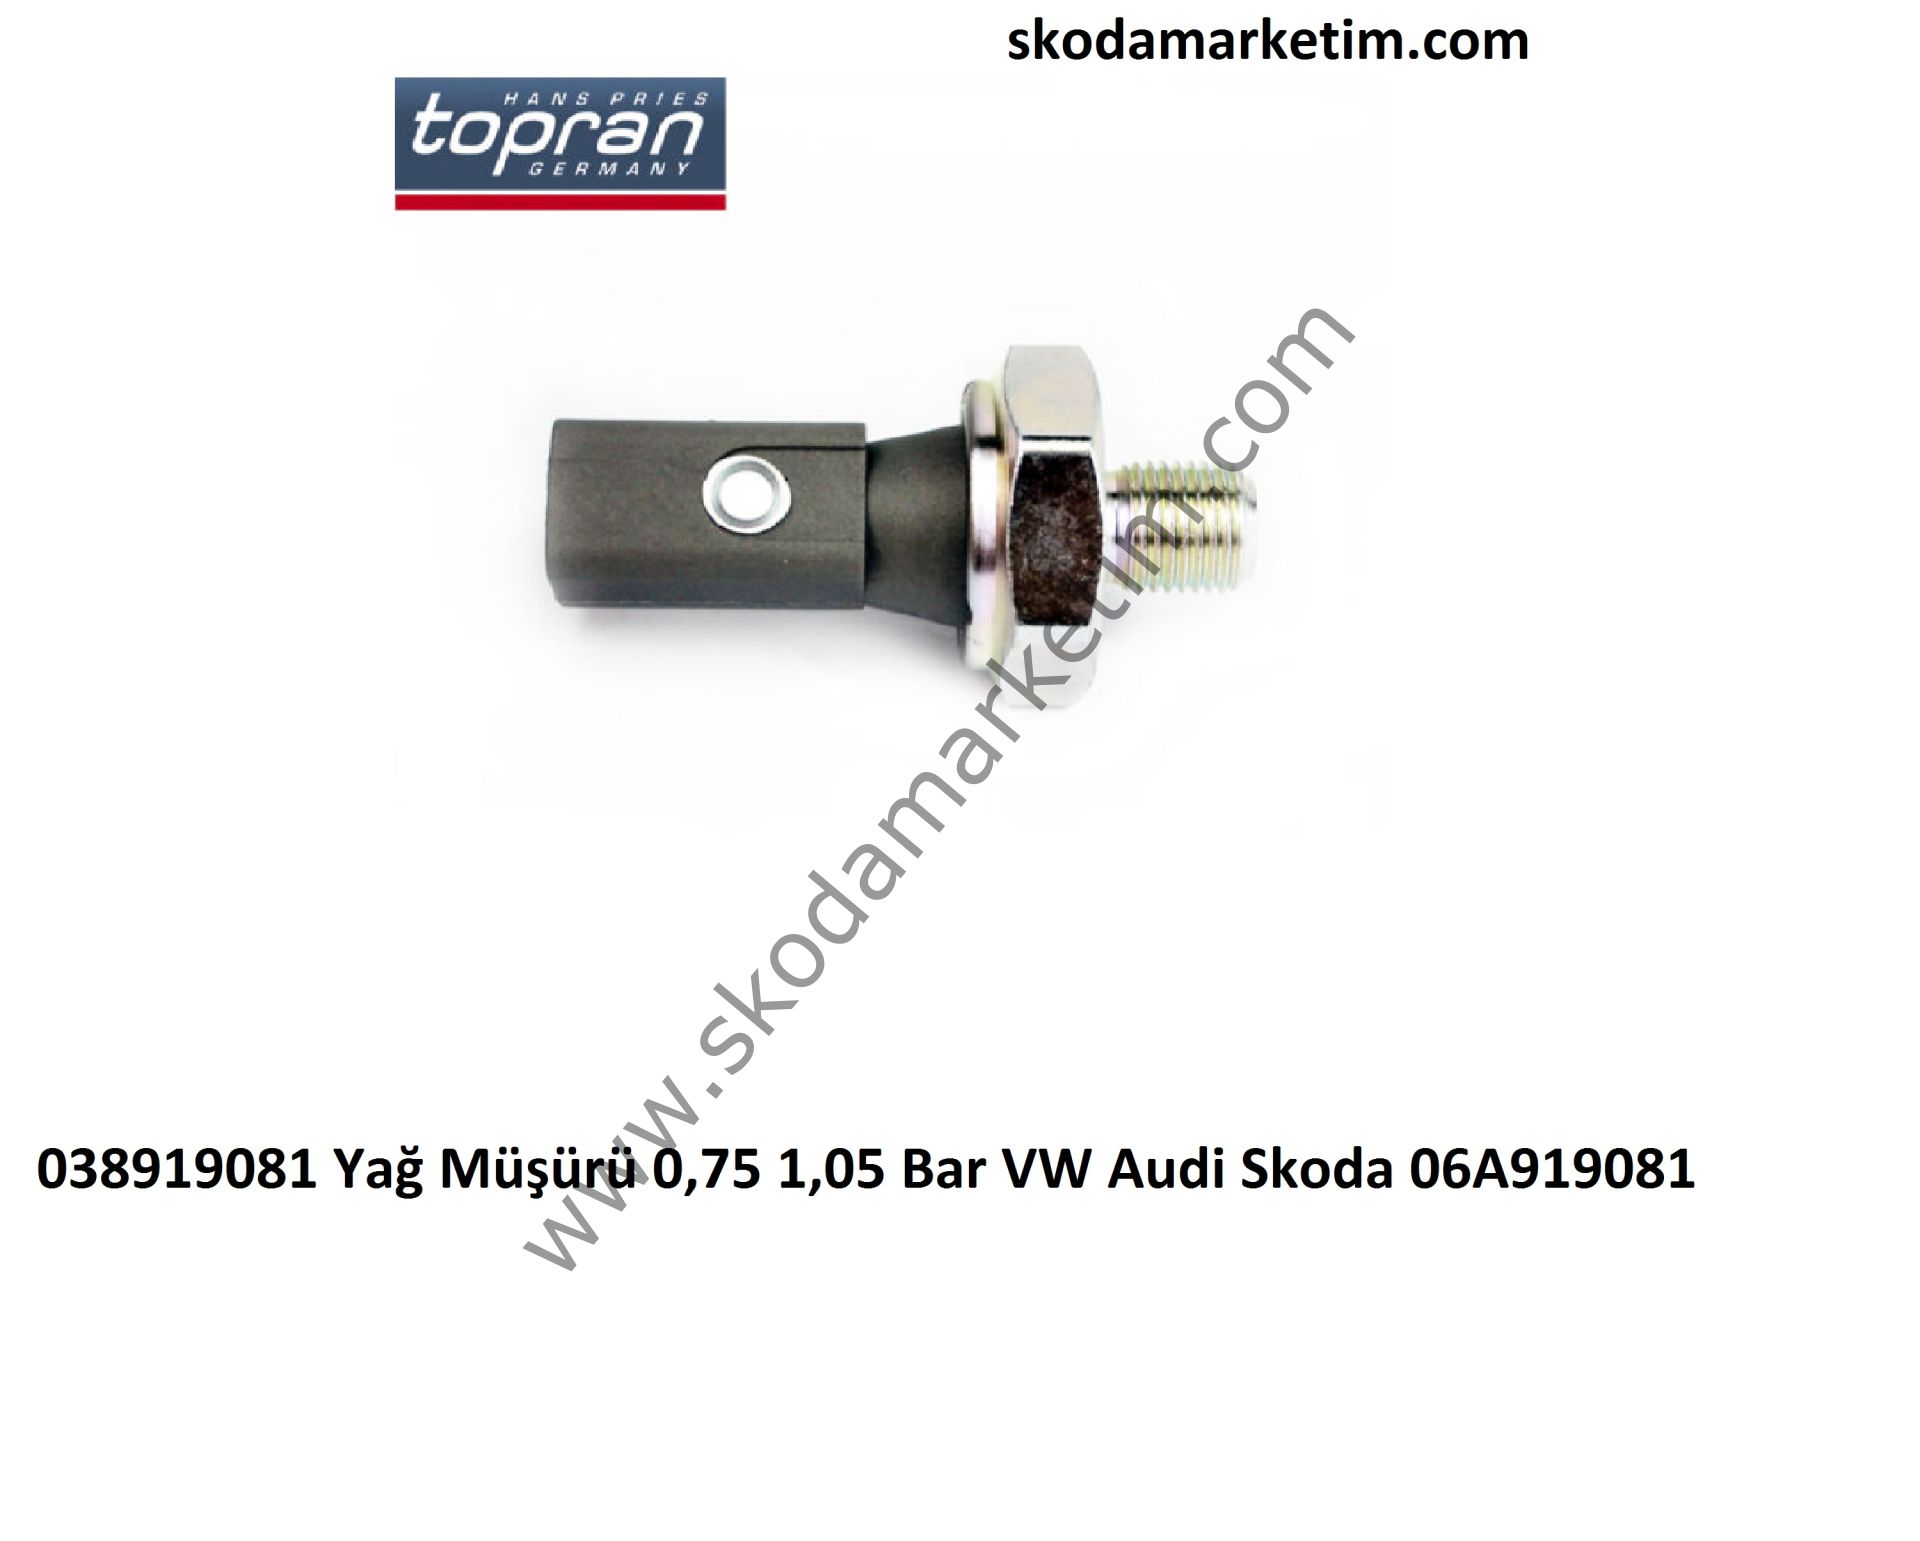 Yağ Müşürü 0,75 1,05 Bar VW Audi Skoda 06A919081